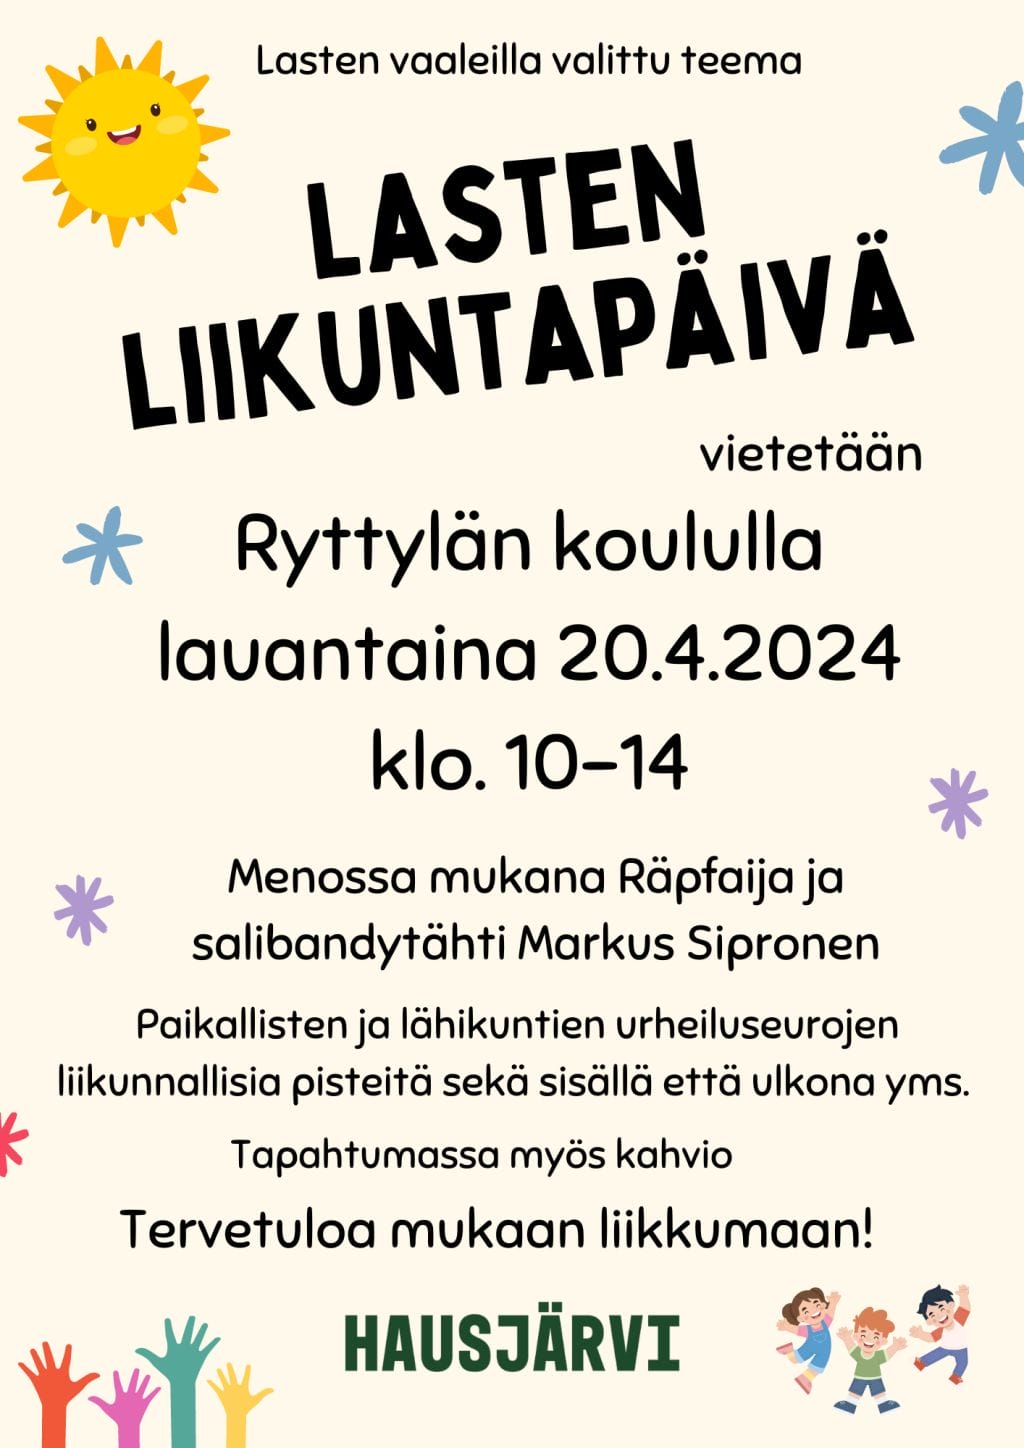 Lasten liikuntapäivä 20.4.2024 Ryttylän koululla. Tapahtuman mainos.